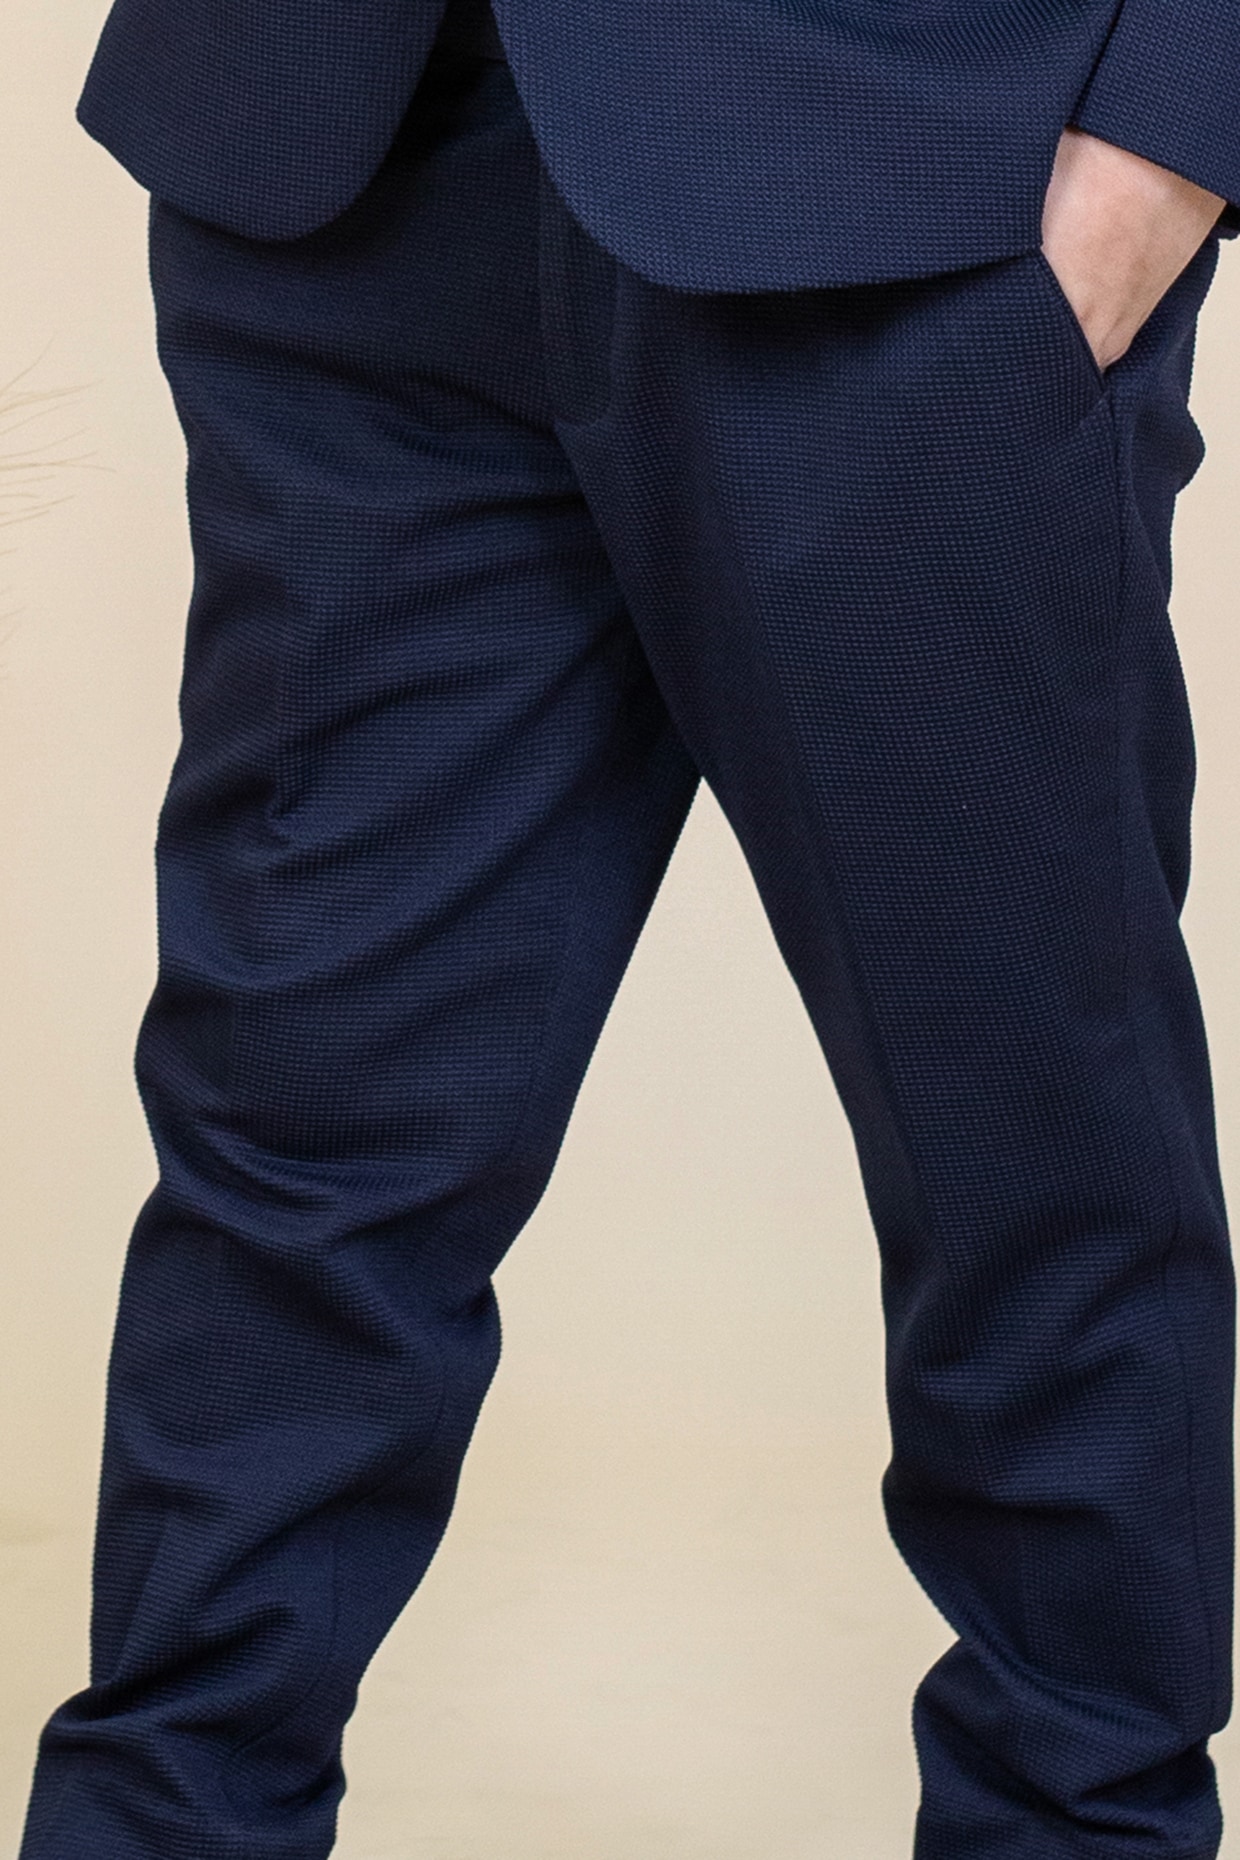 Beige Formal Trouser for Men  Solid  Polywool Slim Fit  JadeBlue   JadeBlue Lifestyle